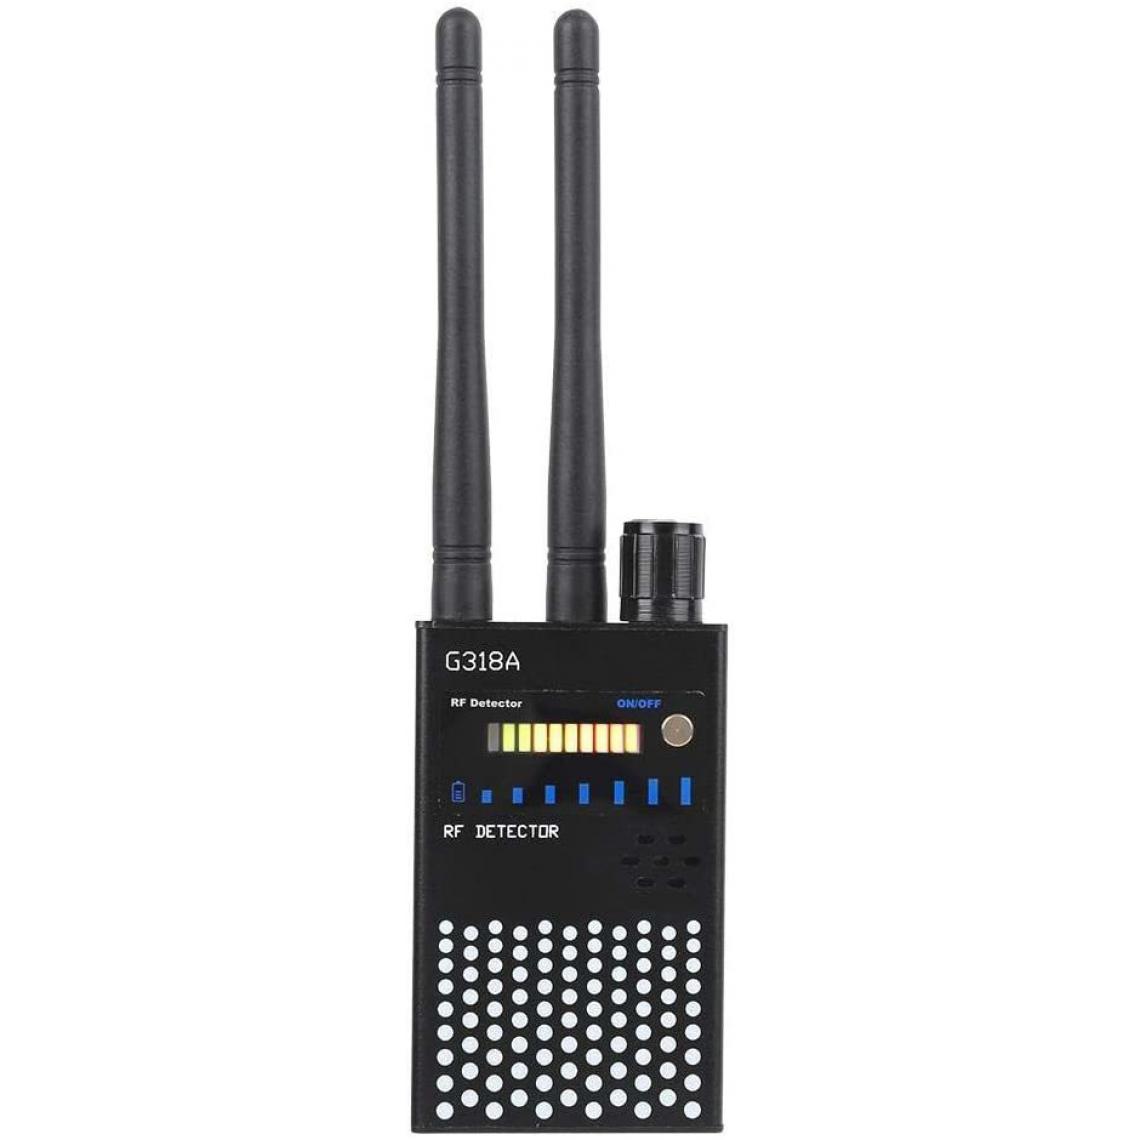 Chrono - Détecteur Anti-Espion ABS Noir Haute sensibilité détecteur GPS caméra détection de téléphone Portable 110-220Vï¼noirï¼ - Autres accessoires smartphone